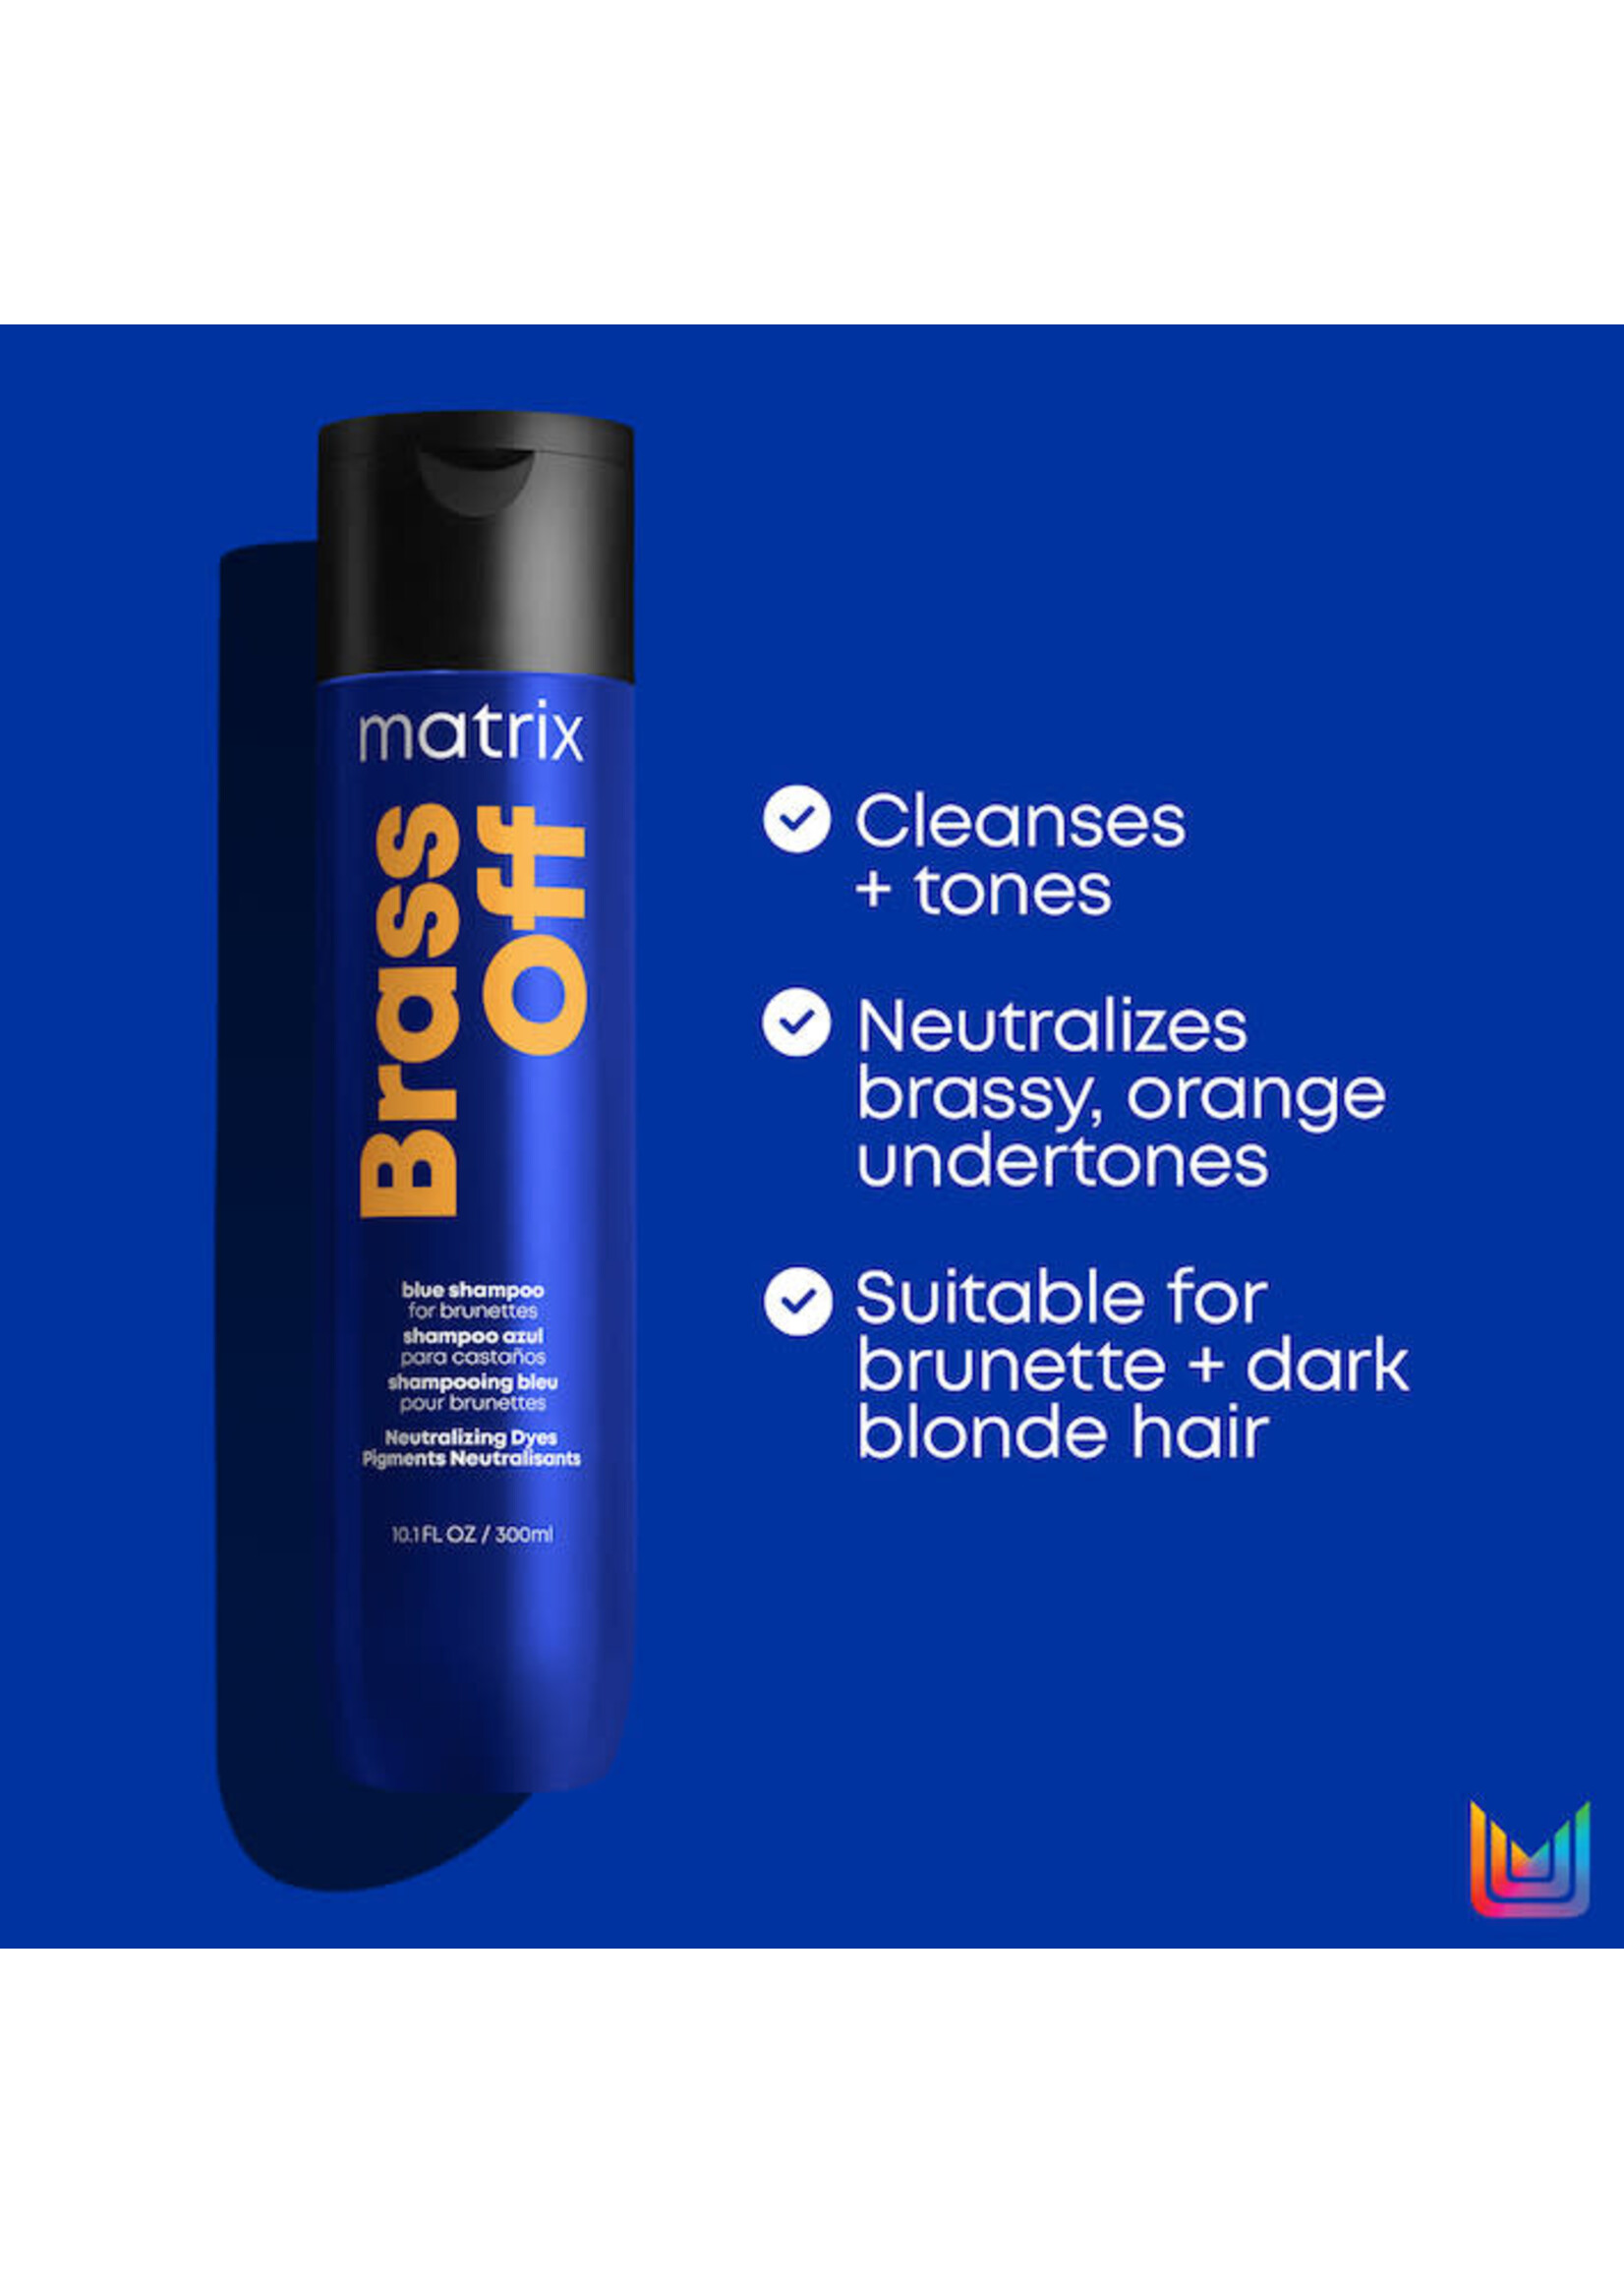 Matrix Matrix Brass Off Blue Shampoo 300ml